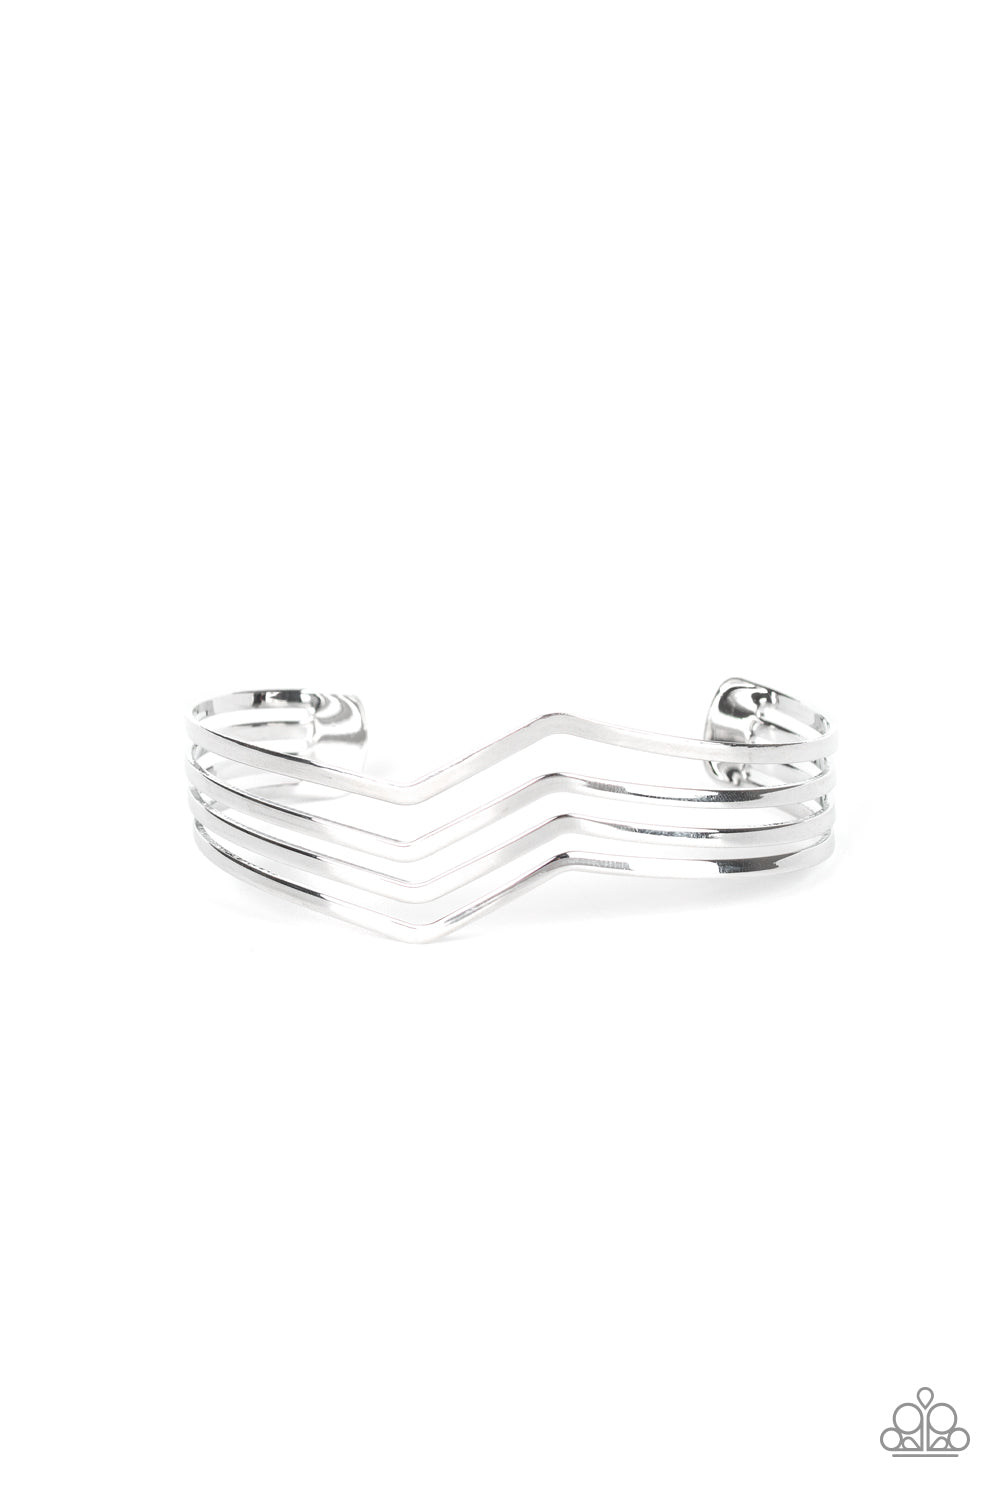 Paparazzi Waverunner - Silver - Zigzag Cuff Bracelet - $5 Jewelry With Ashley Swint